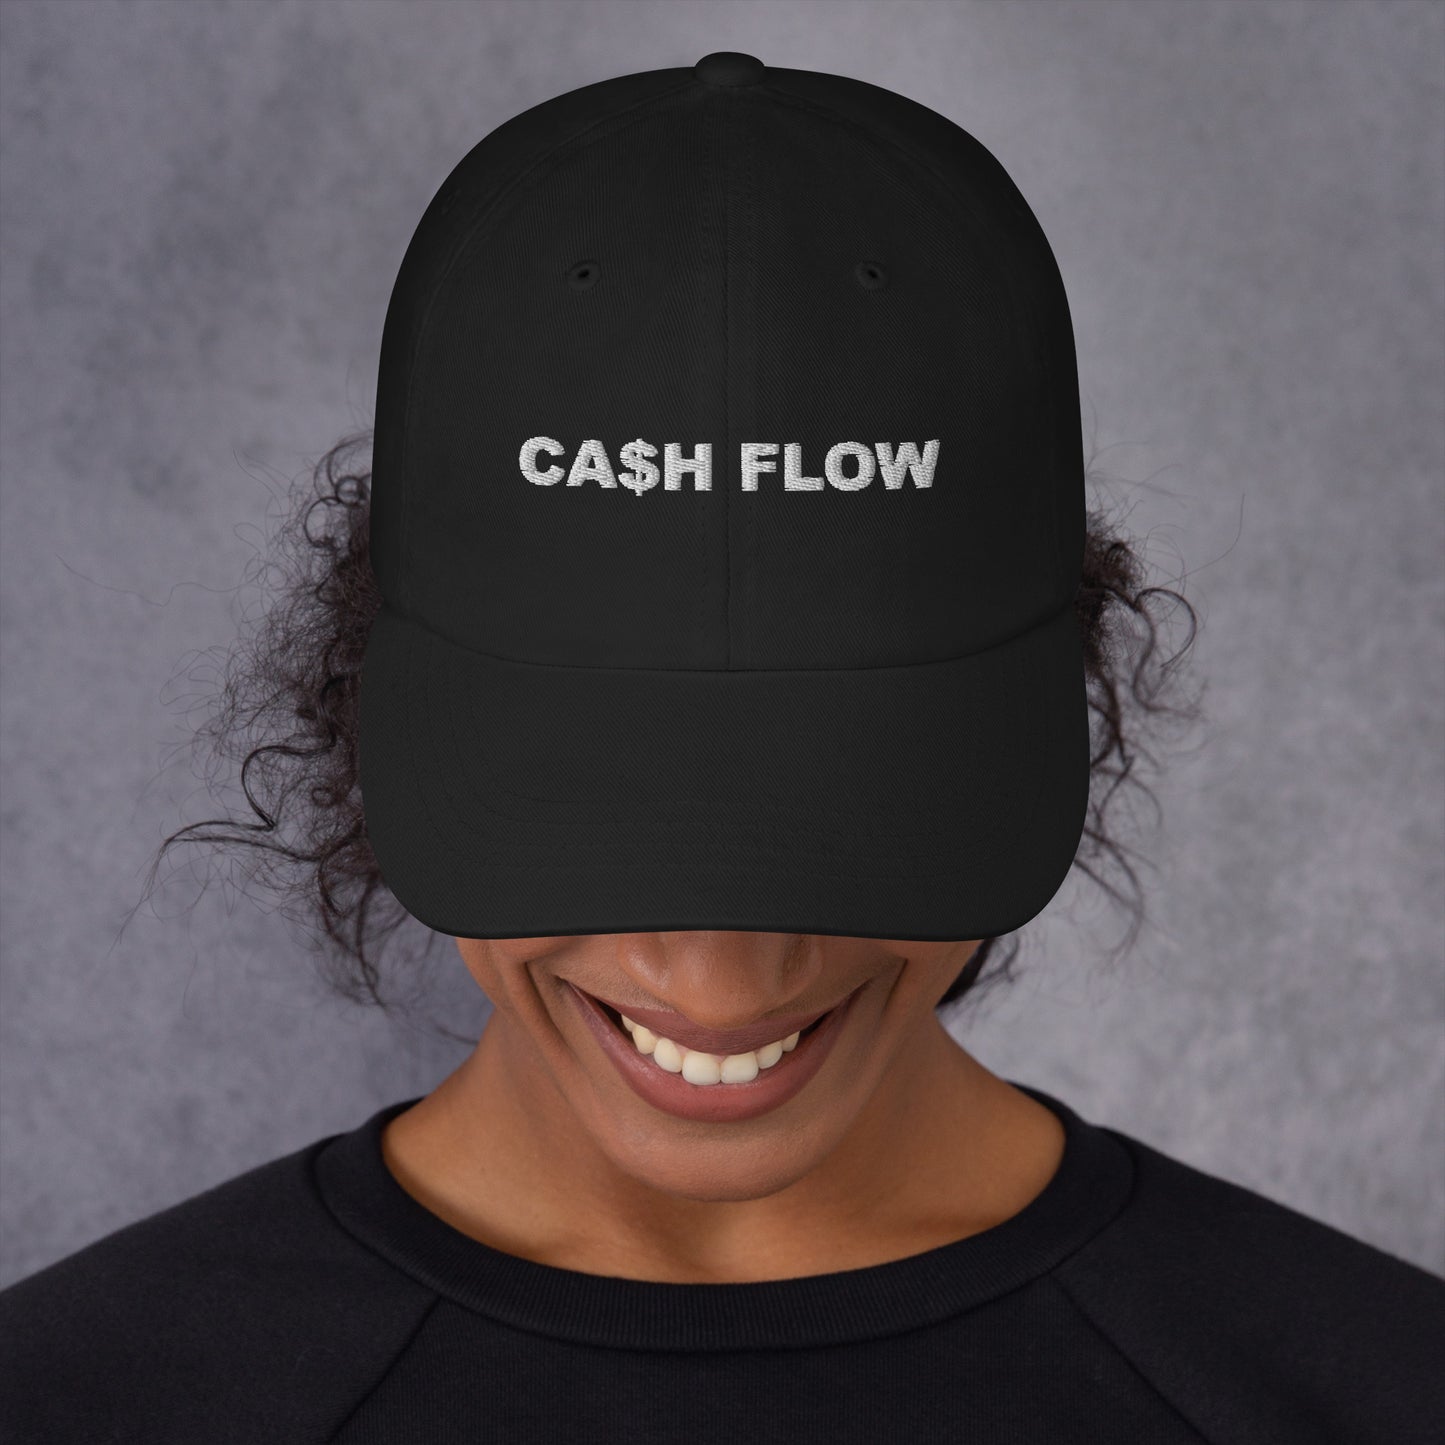 CA$SH FLOW - Dad hat